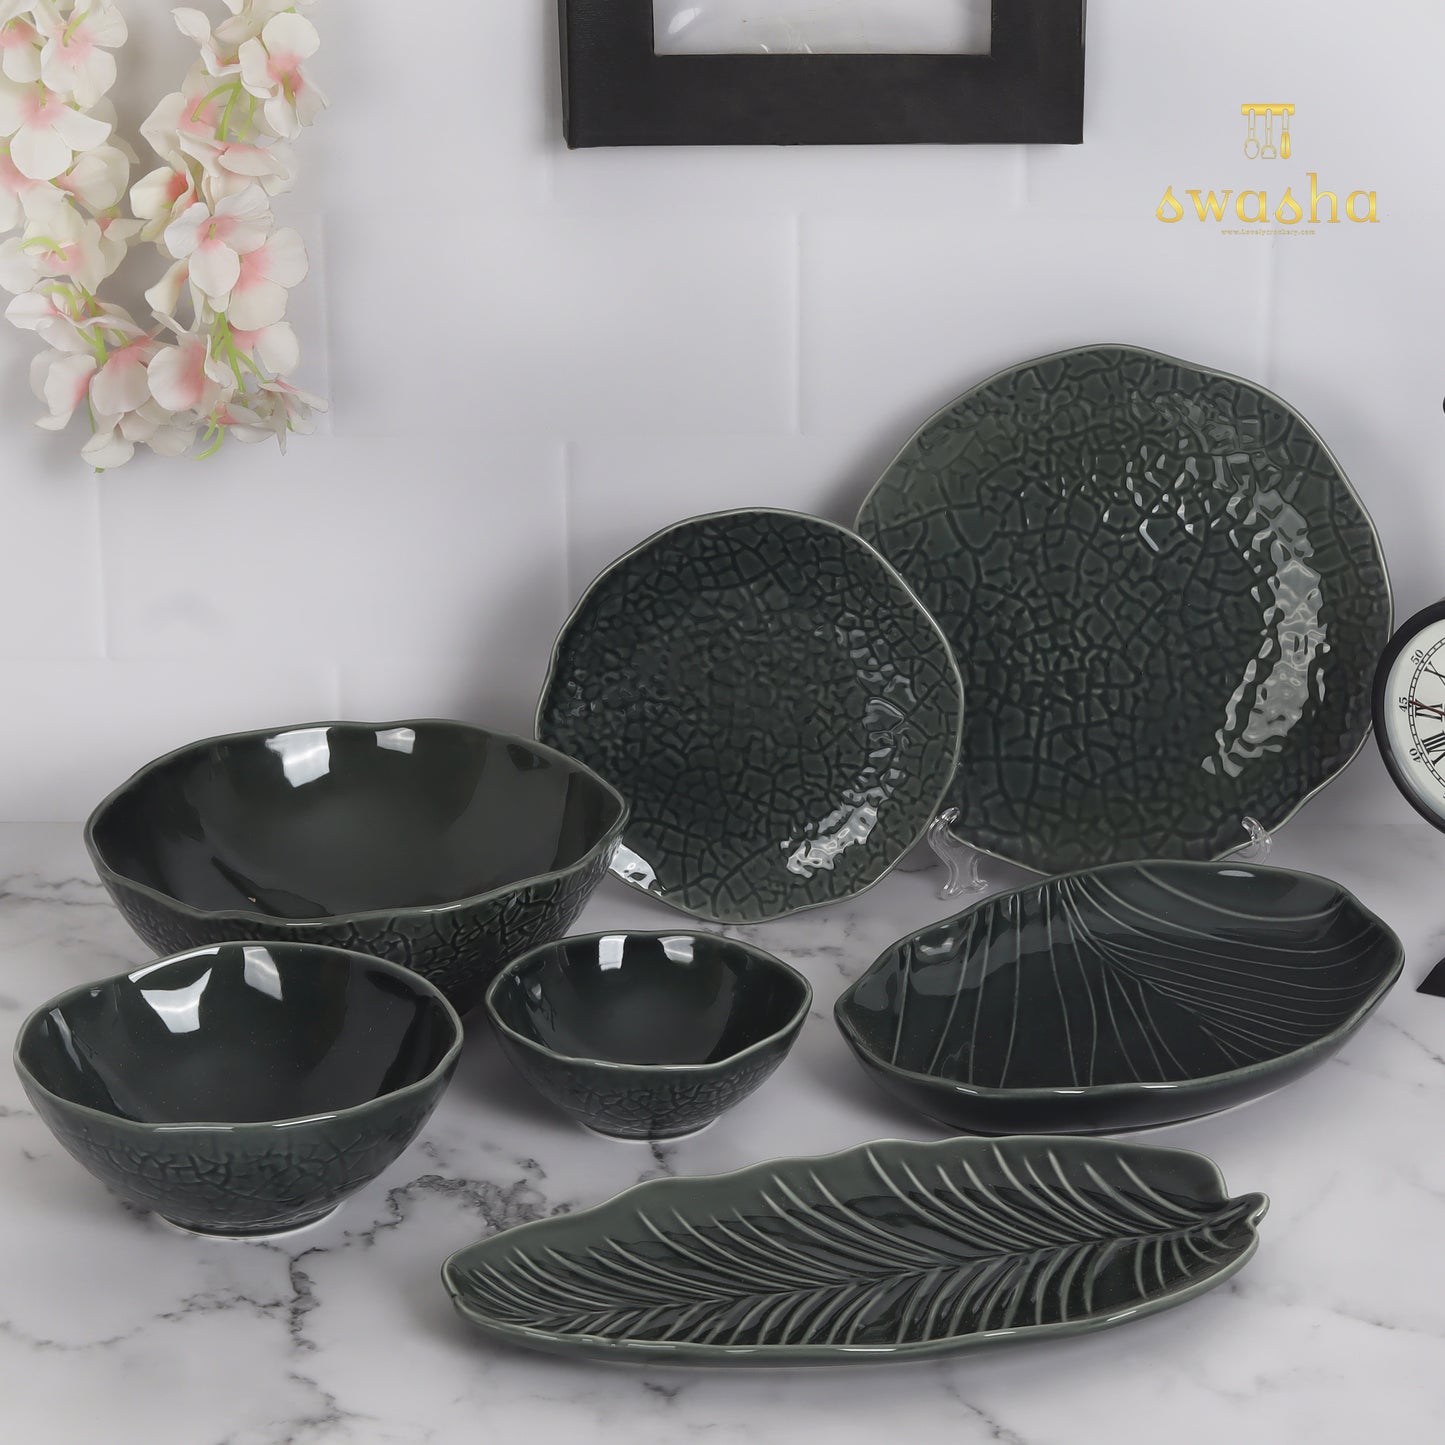 Ceramic snacks set or platter - elegantly crafted for delightful serving experiences